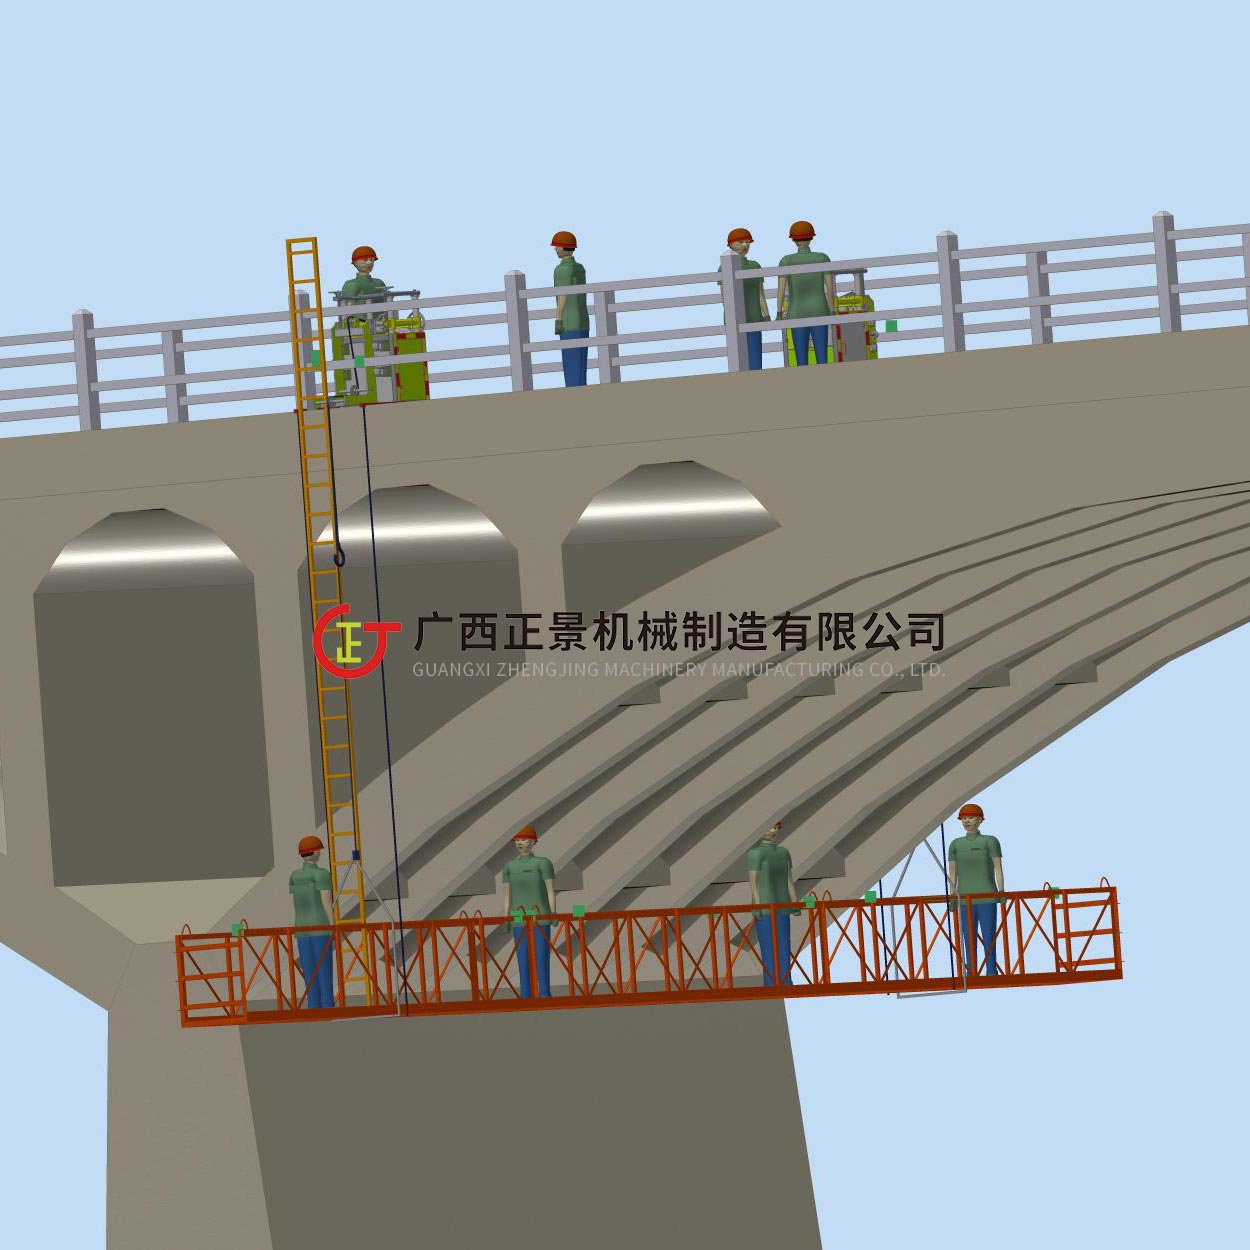 桥梁检修车-桥底施工车-广西正景机械